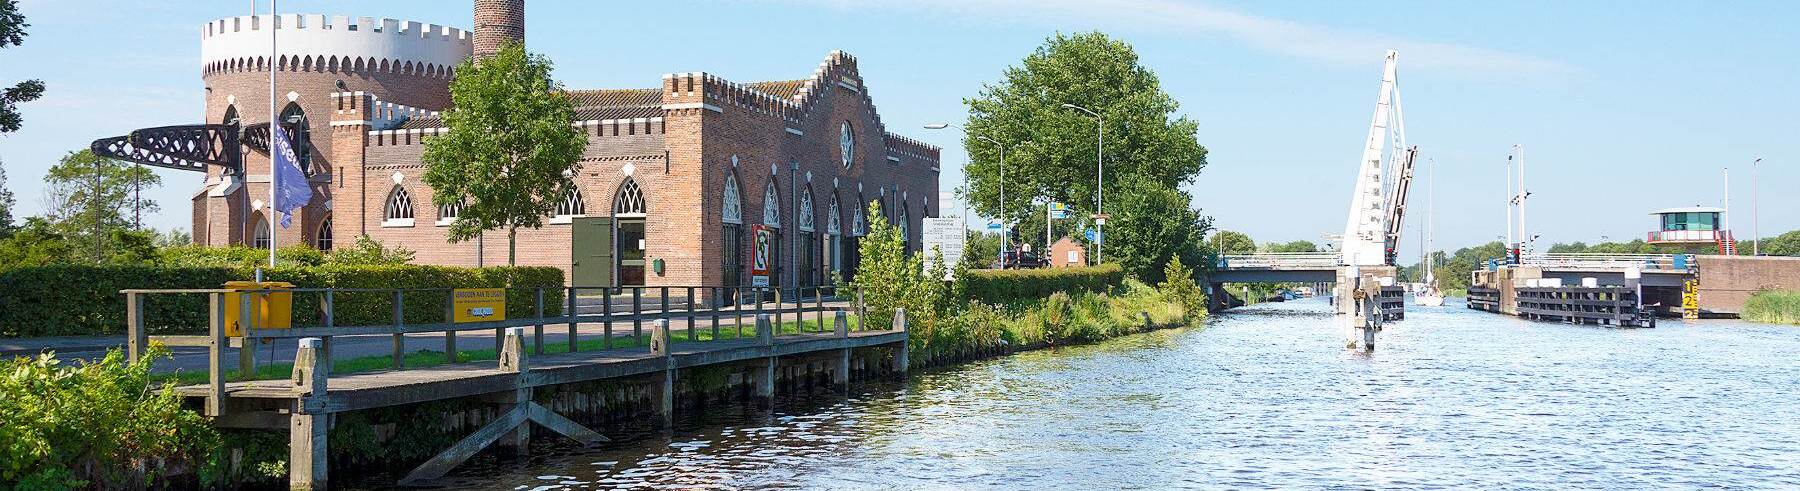 Welzorg Haarlemmermeer